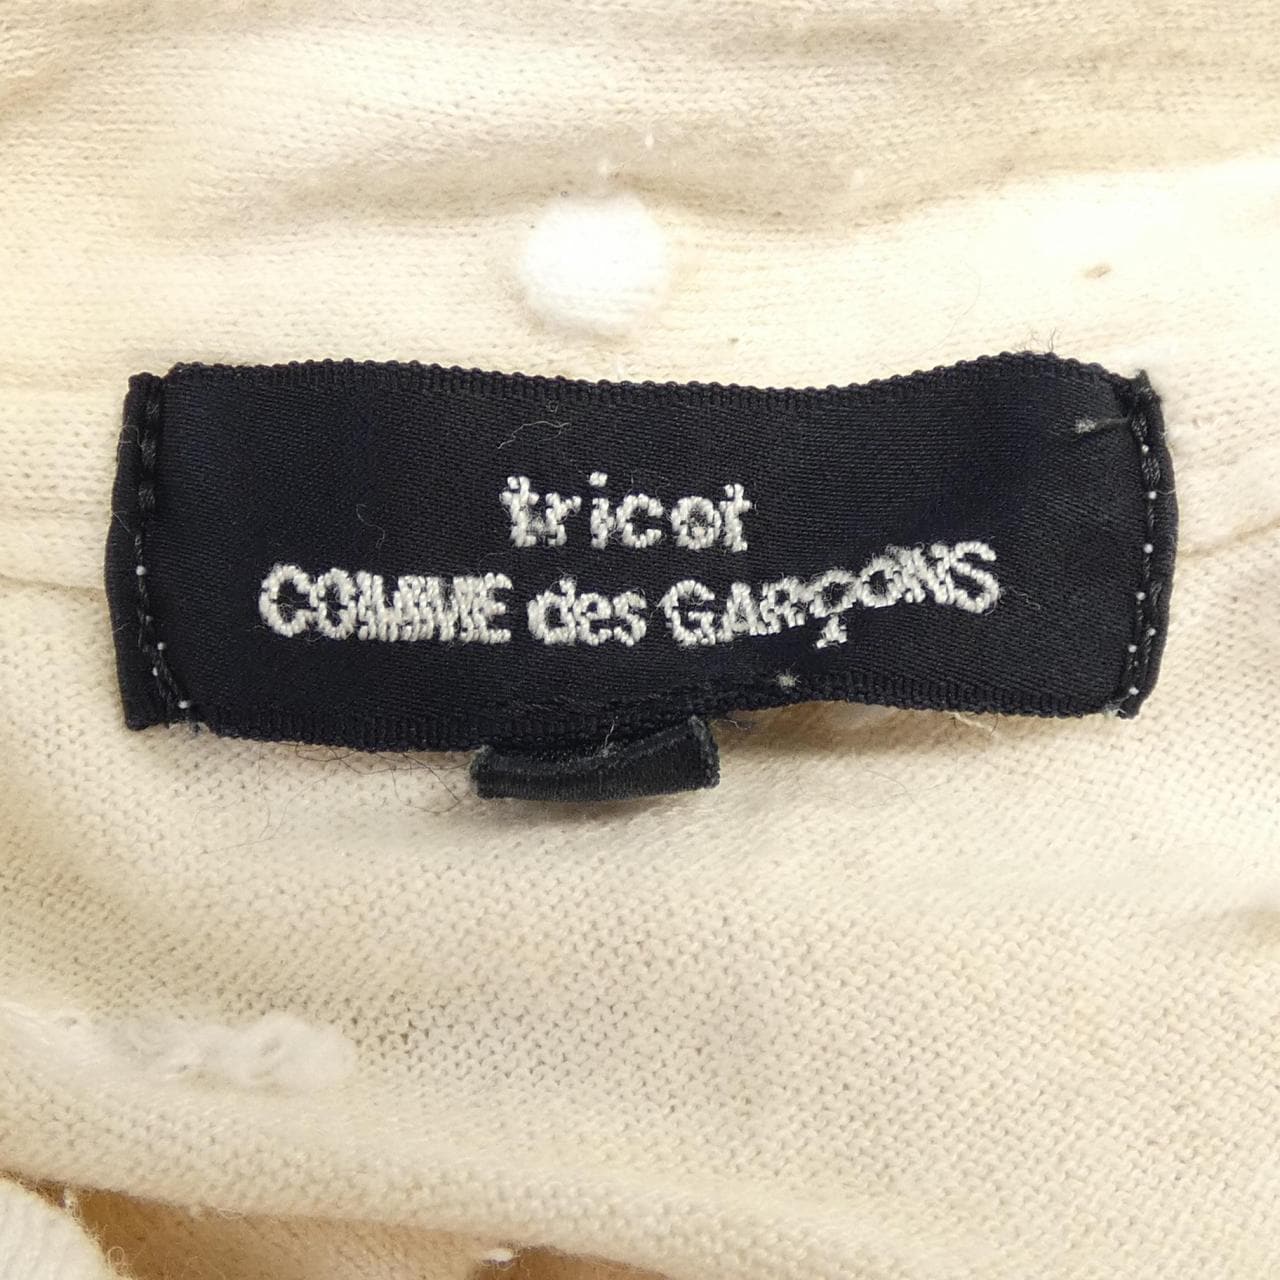 トリココムデギャルソン tricot GARCONS シャツ